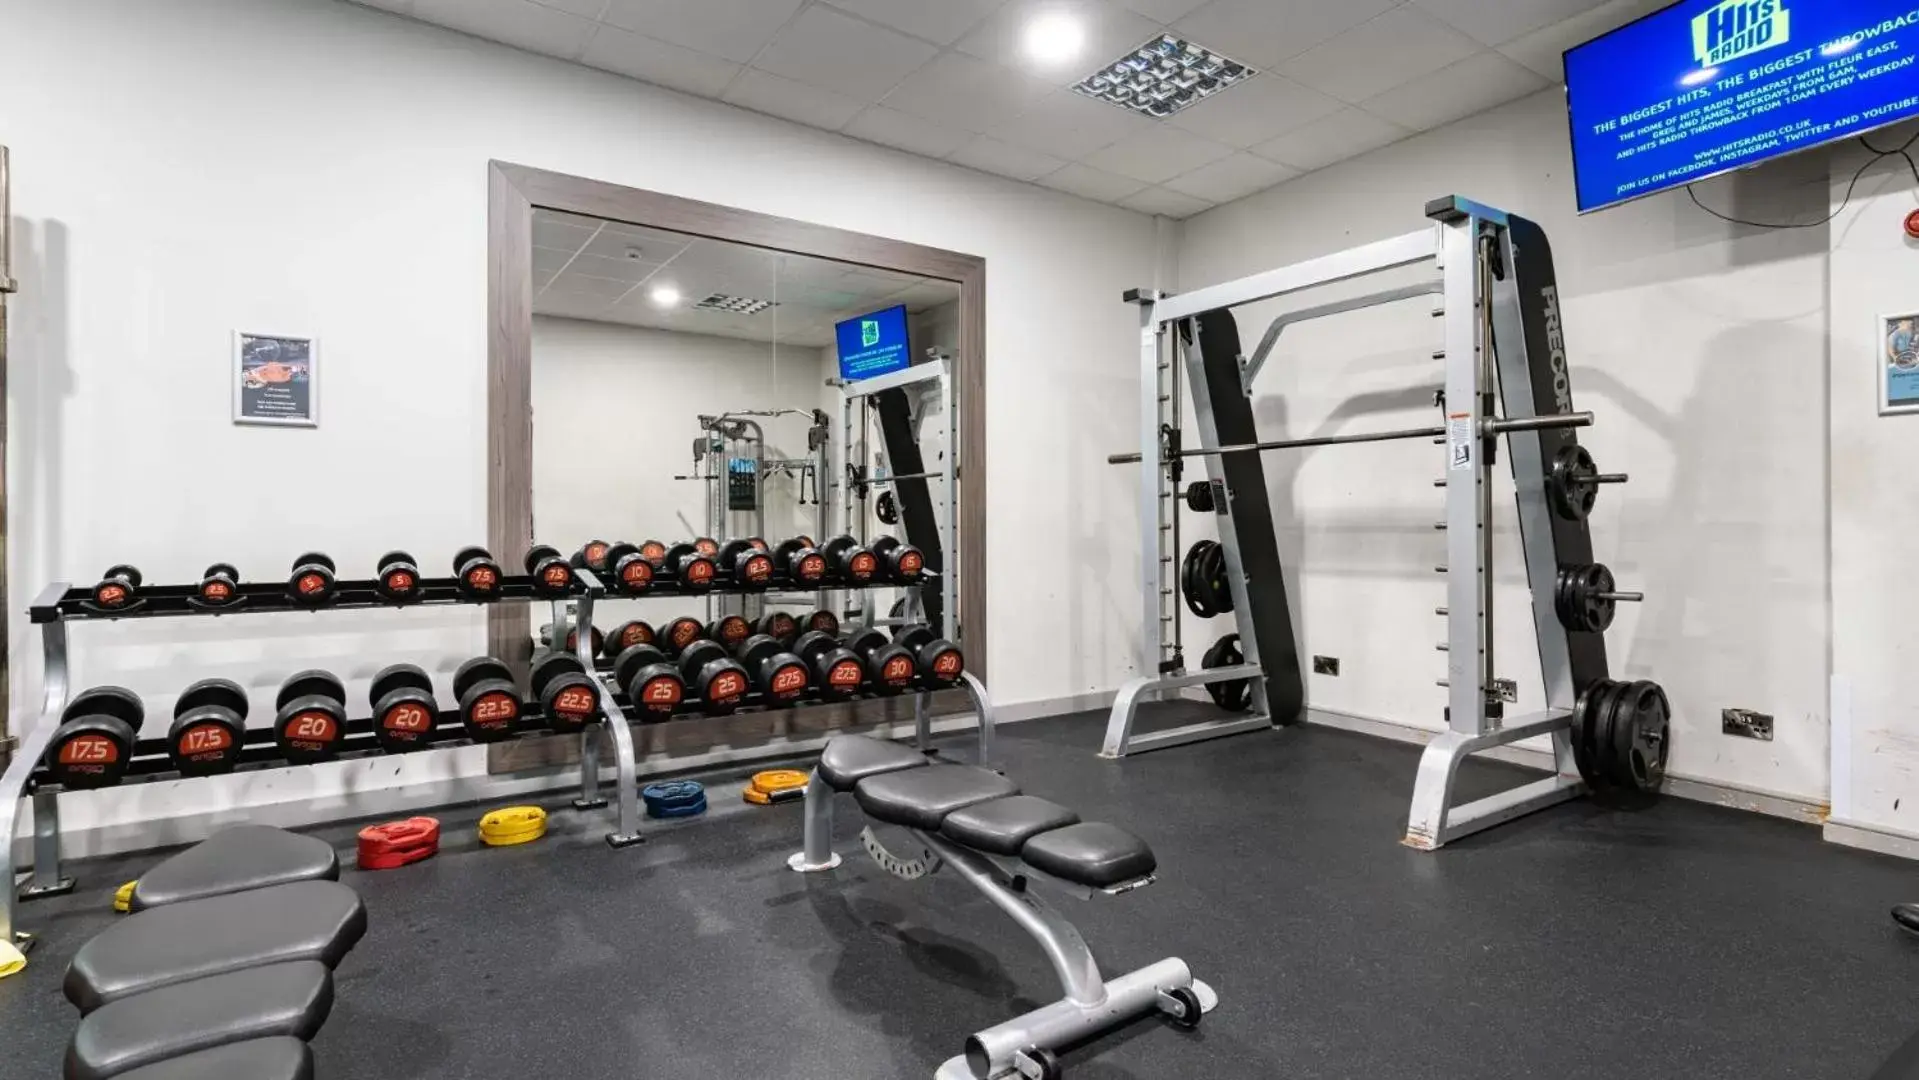 Fitness centre/facilities, Fitness Center/Facilities in Leonardo Hotel Cheltenham - Formerly Jurys Inn